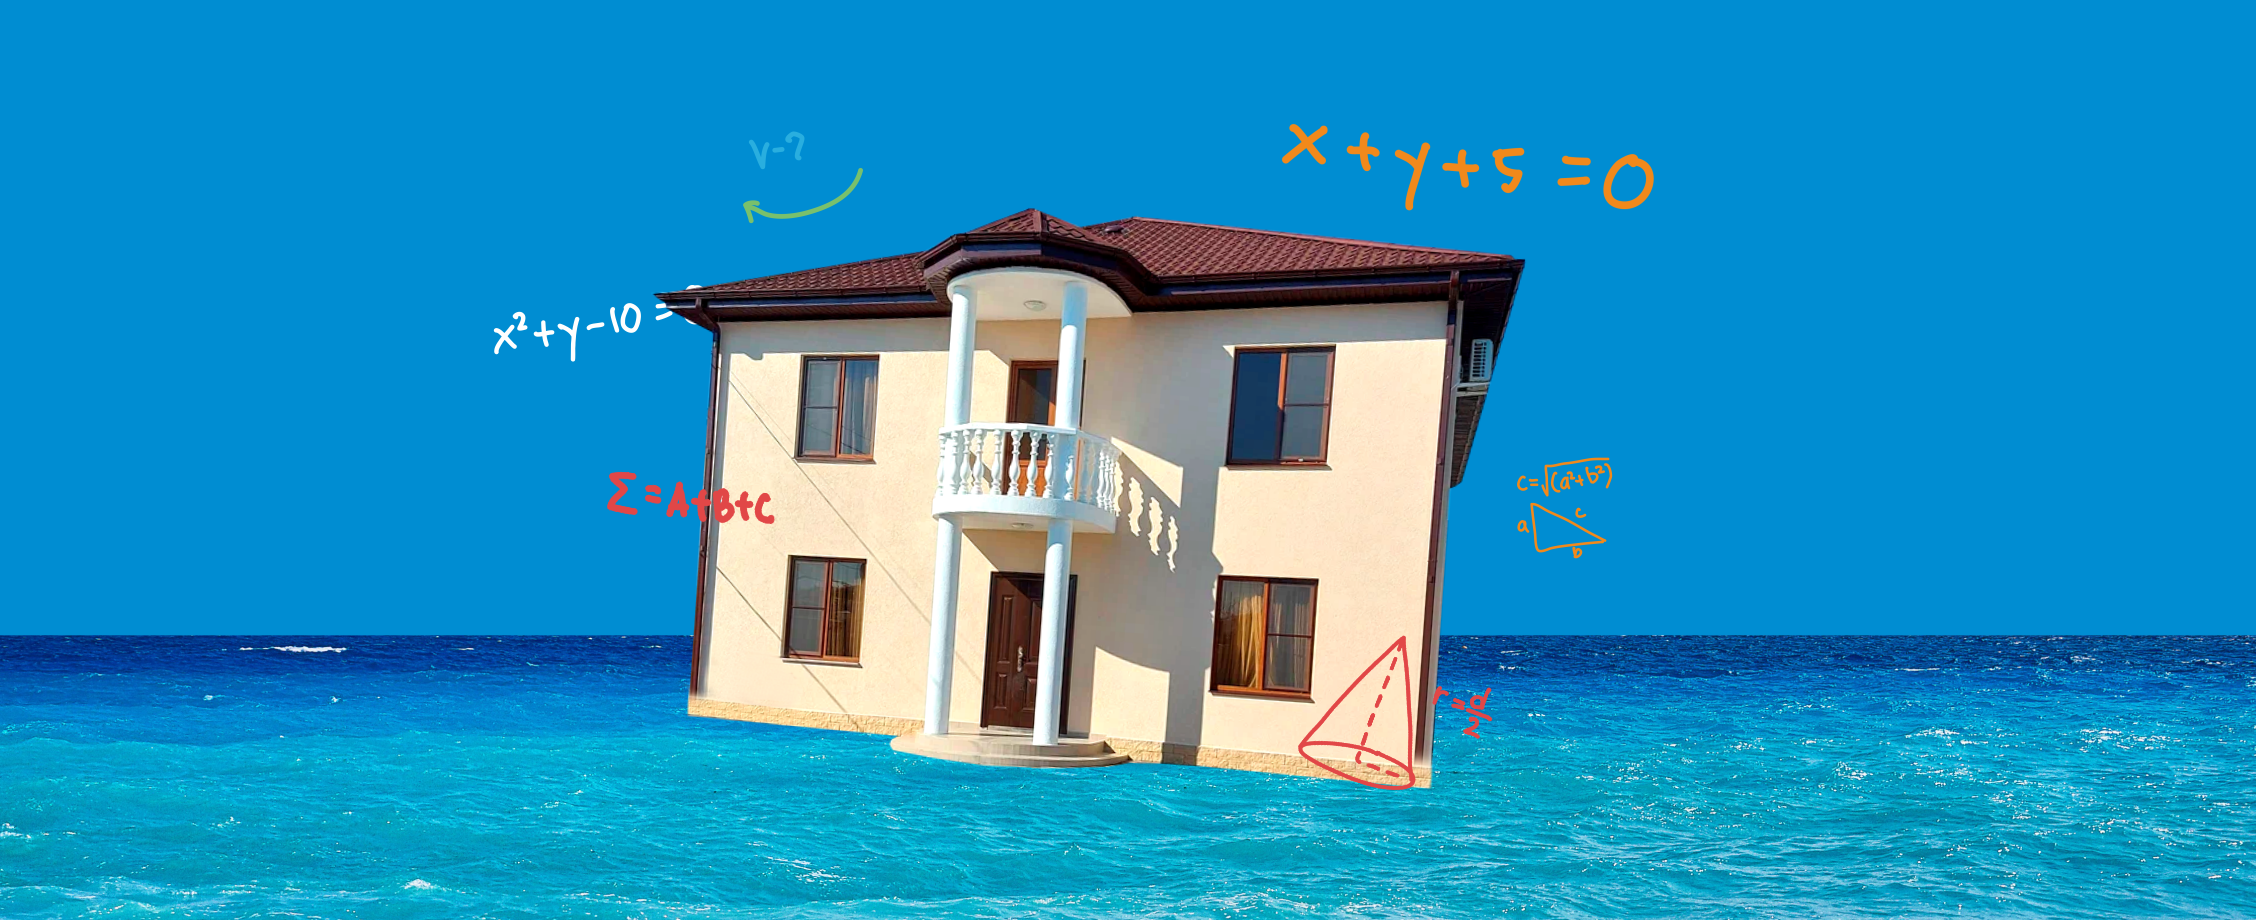 Купить недвижимость в Абхазии и не сойти с ума: инструкция со всеми кавказскими нюансами